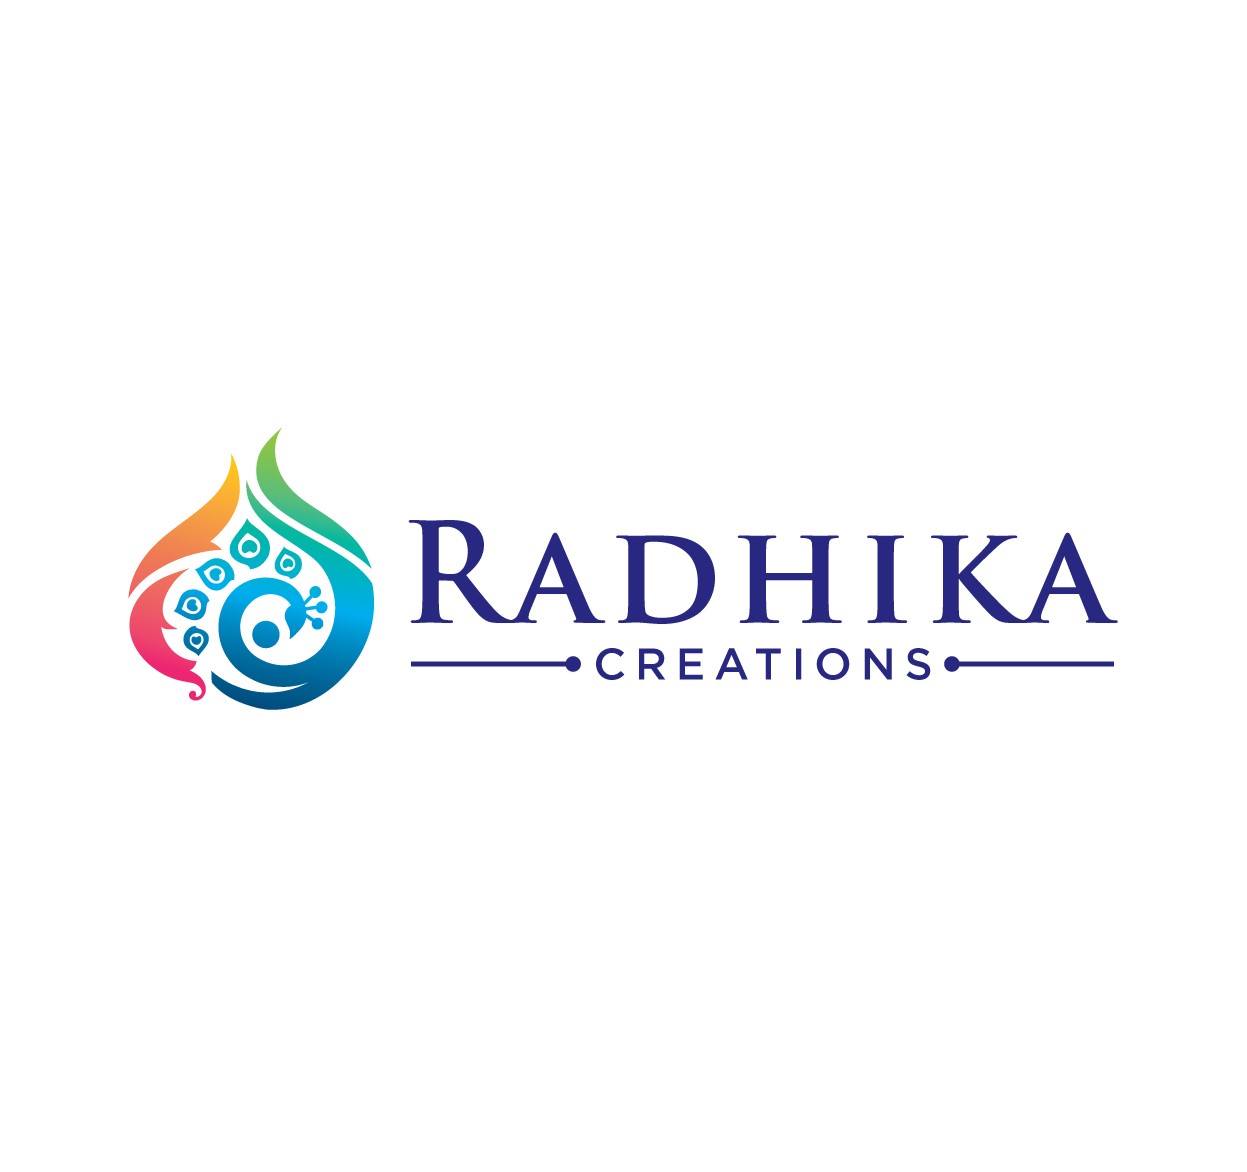 Radhika Creations